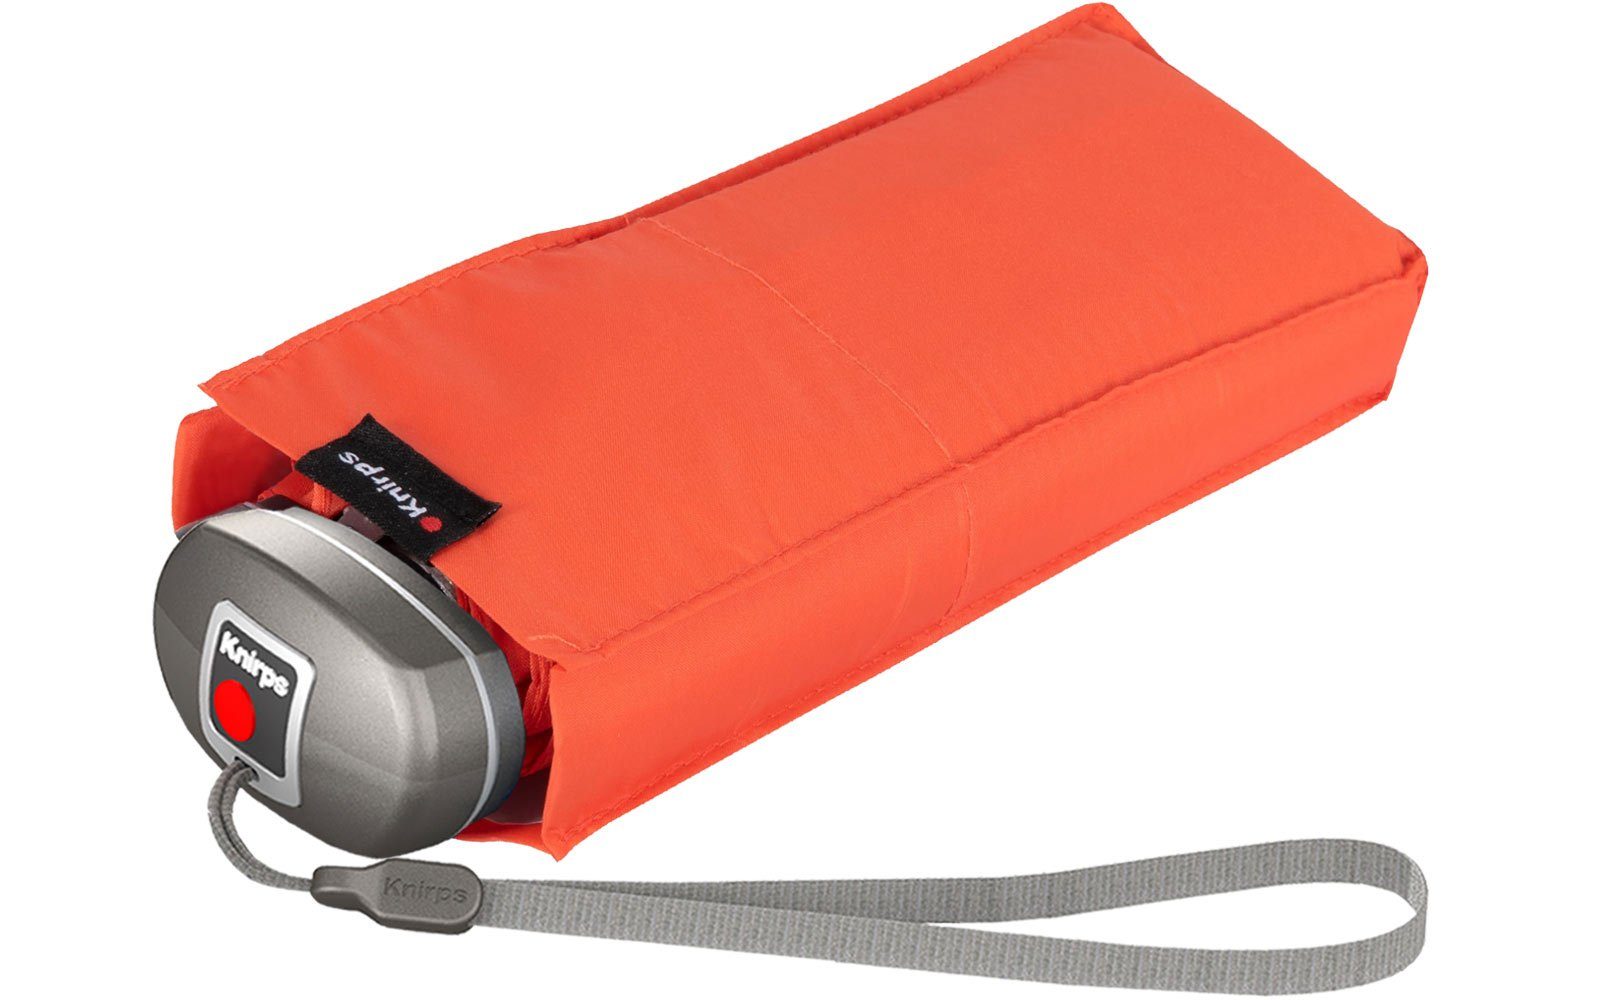 Knirps® Taschenregenschirm Mini-Schirm Travel in leicht kompakt, zuverlässige Begleiter, Tasche passt jede klein der der